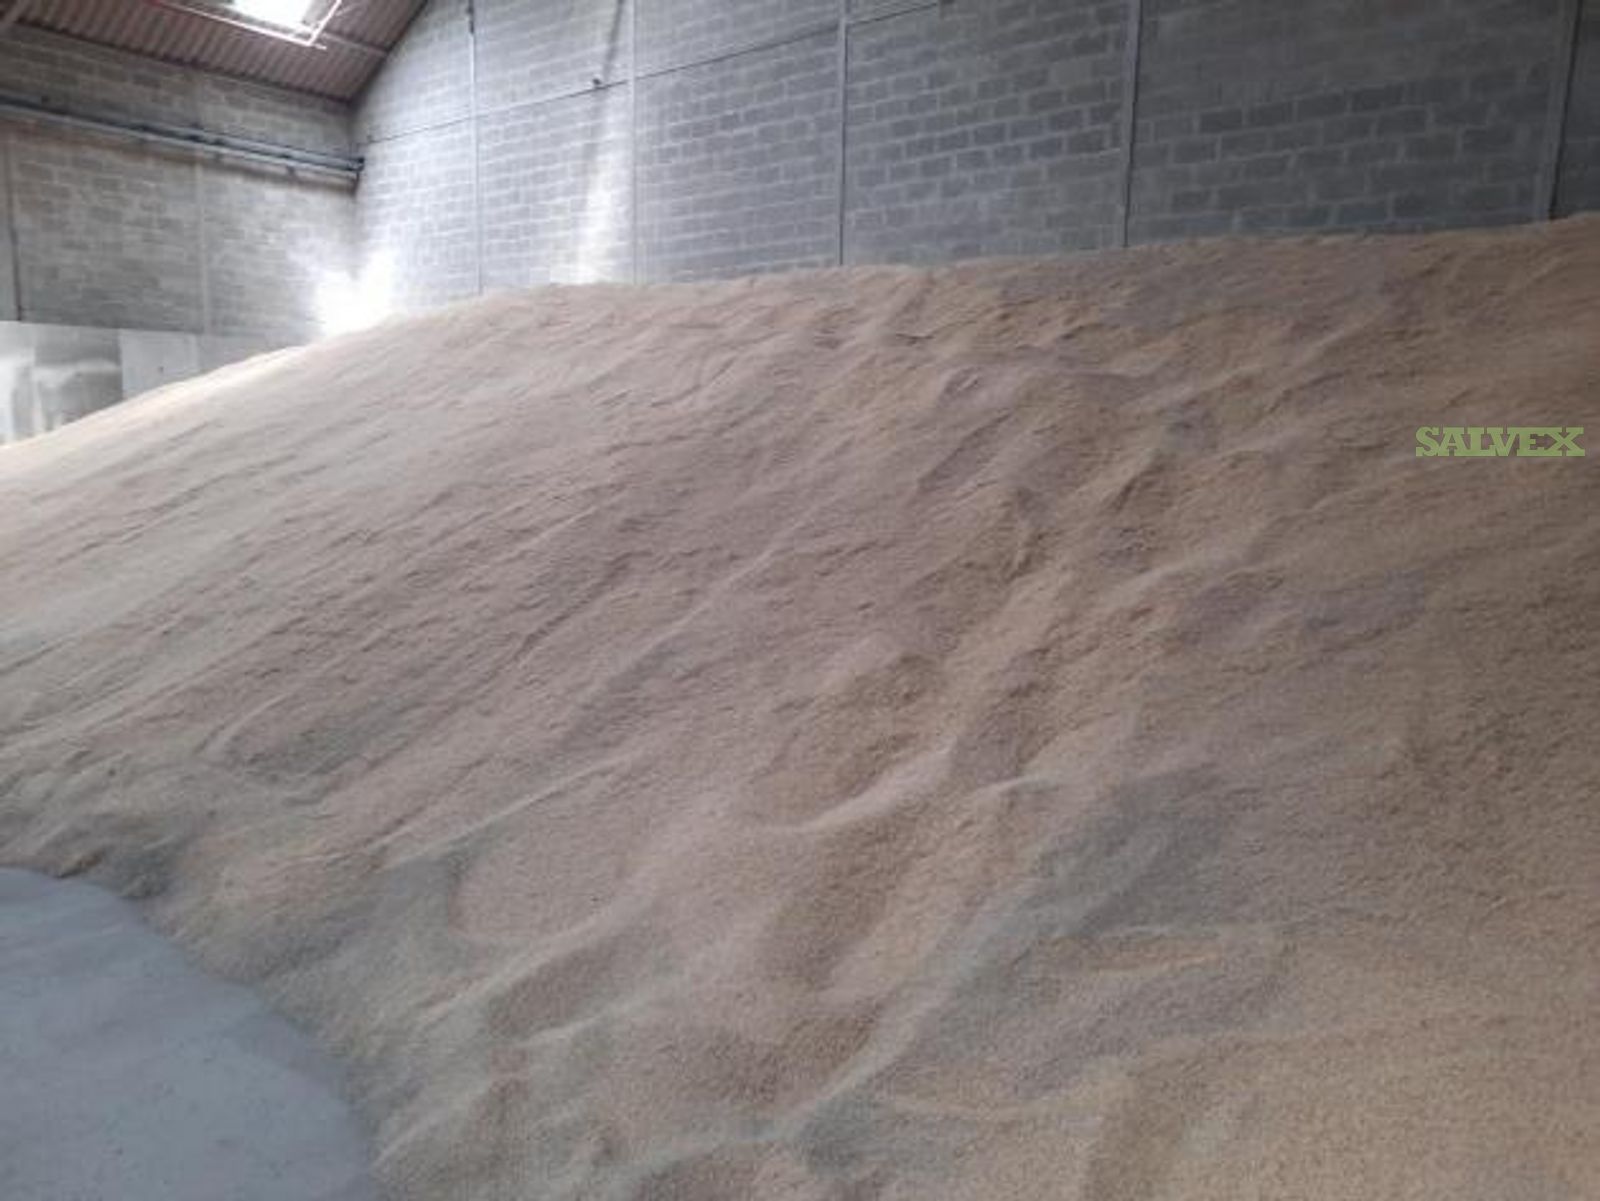 Biofuel Production Resource: Brown Pusa Type-3 Basmati Rice In Bulk Crop 2019 (245 MT)